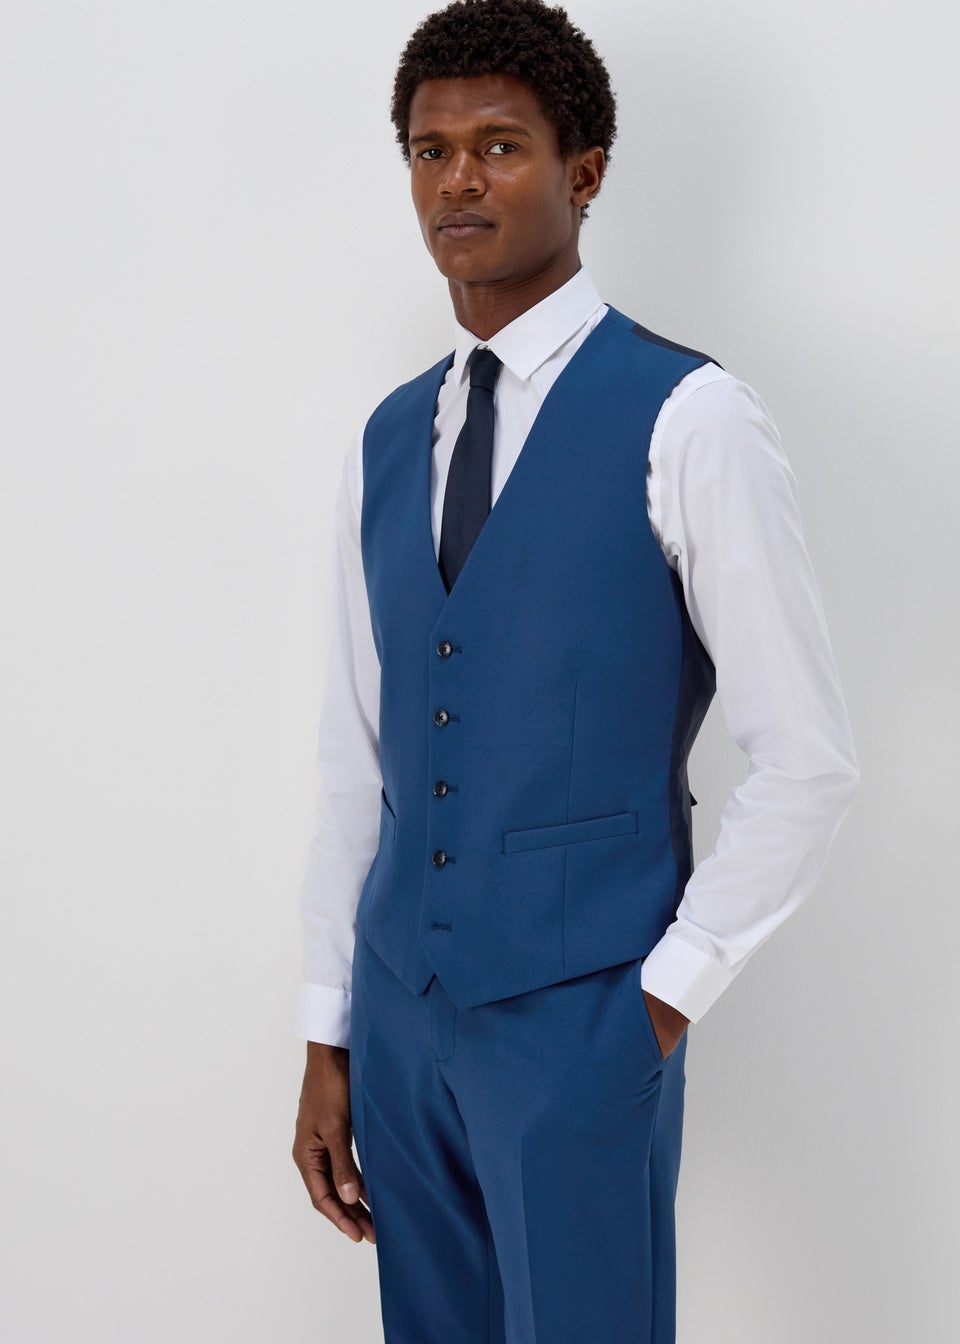 Definitive Male | Blue suit men, Wedding suits men, Dark blue suit